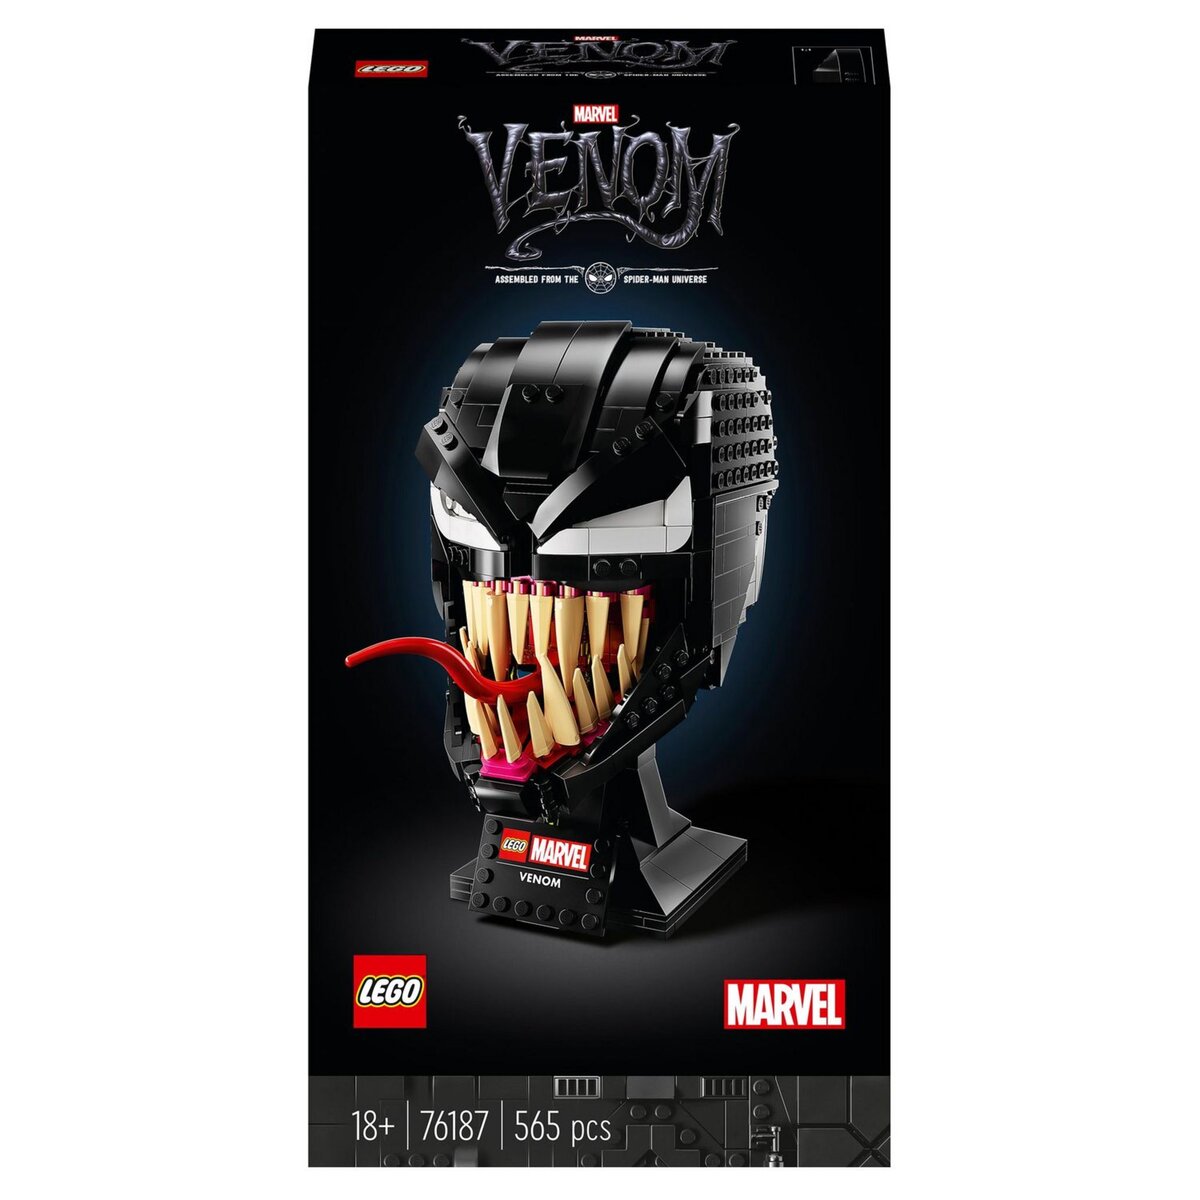 LEGO Marvel 76187 Venom, Kit de Construction, Masque, Casque de